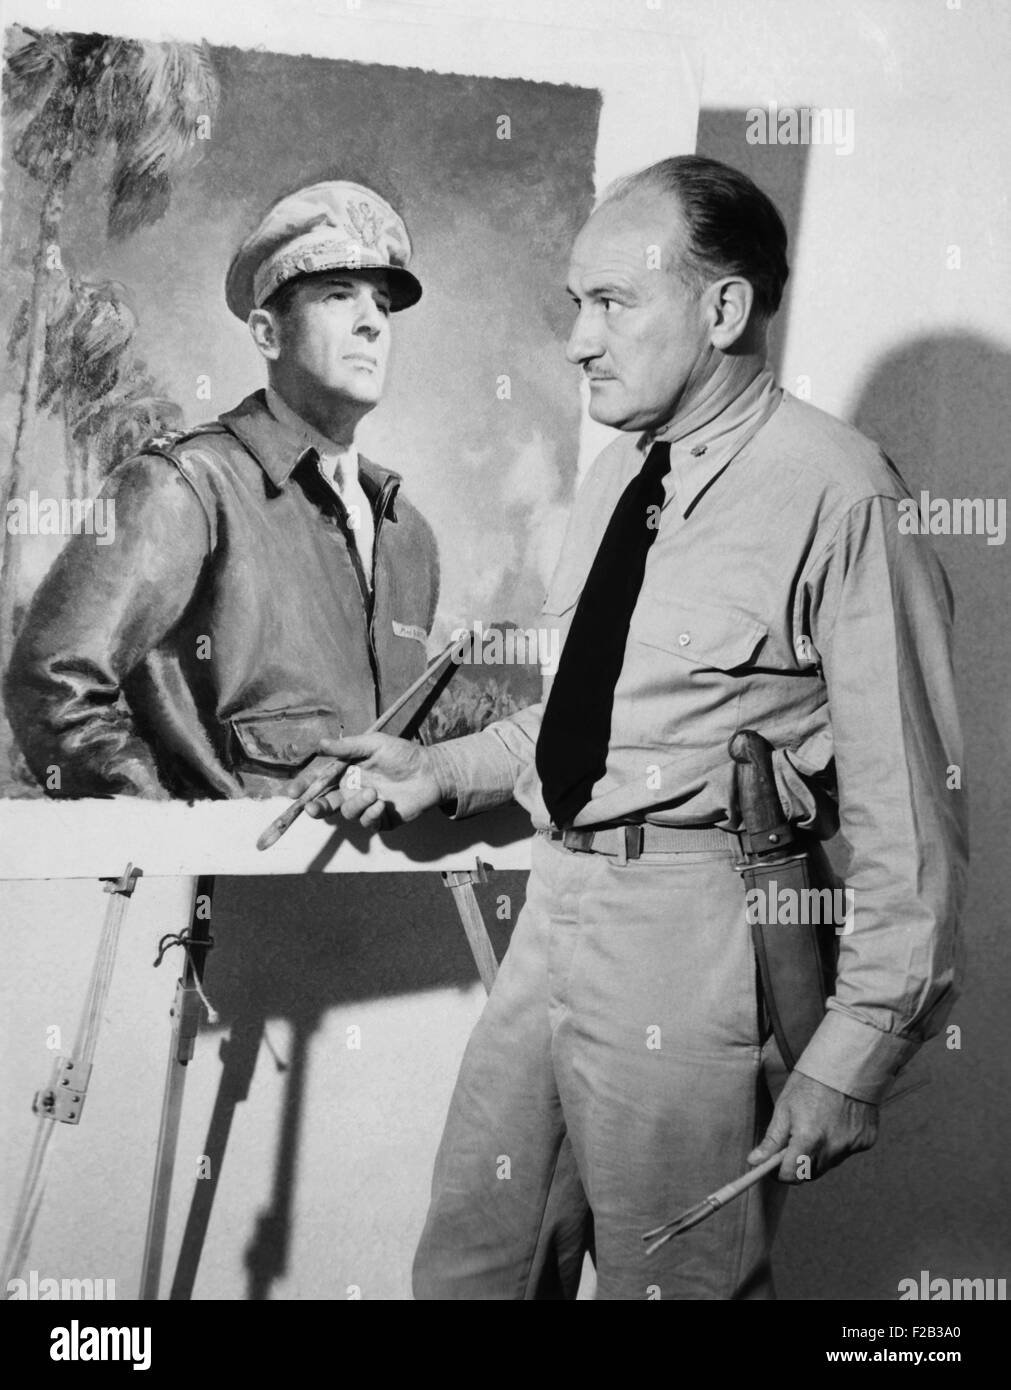 Künstler McClelland Barclay mit seinem Porträt von General Douglas MacArthur während des zweiten Weltkriegs. Im Juli 1943 wurde er getötet, als sein Schiff auf den Salomonen torpediert wurde. Er war gegangen, in den Kampf um die Kampfhandlung zu skizzieren. -(CSU 2015 6 218) Stockfoto